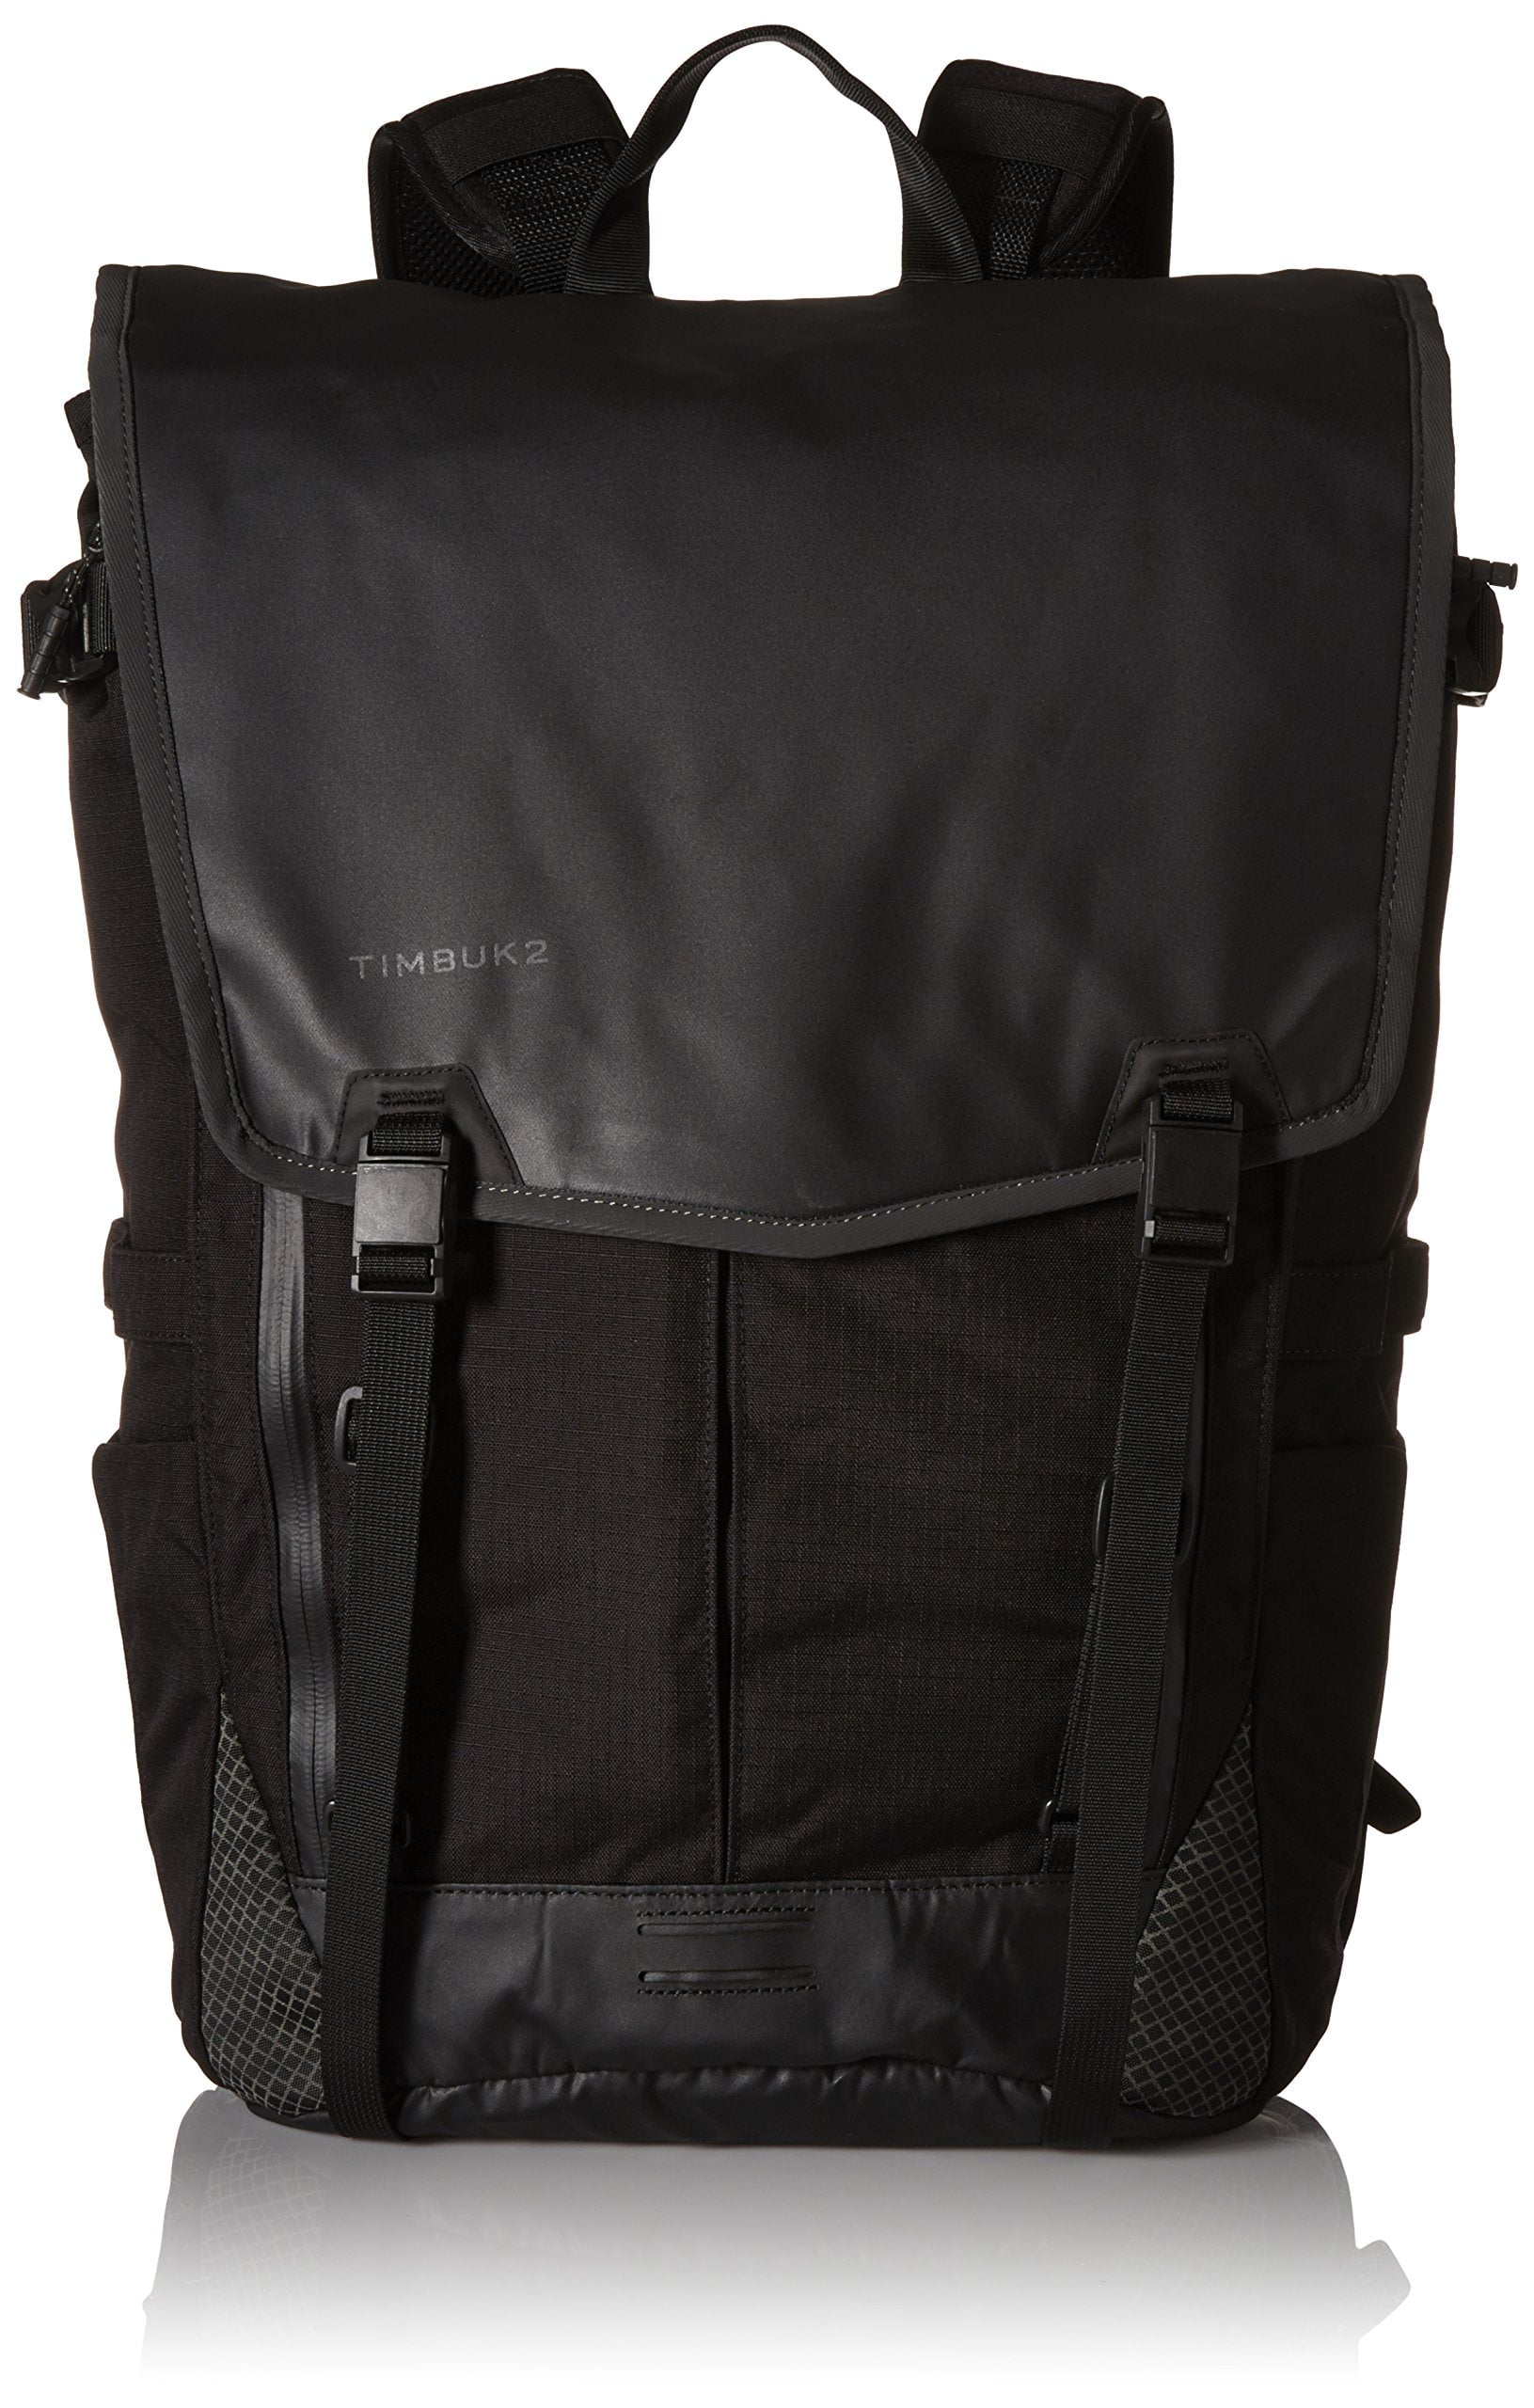 Timbuk2 - Set Laptop Backpack (Black) - Walmart.com - Walmart.com